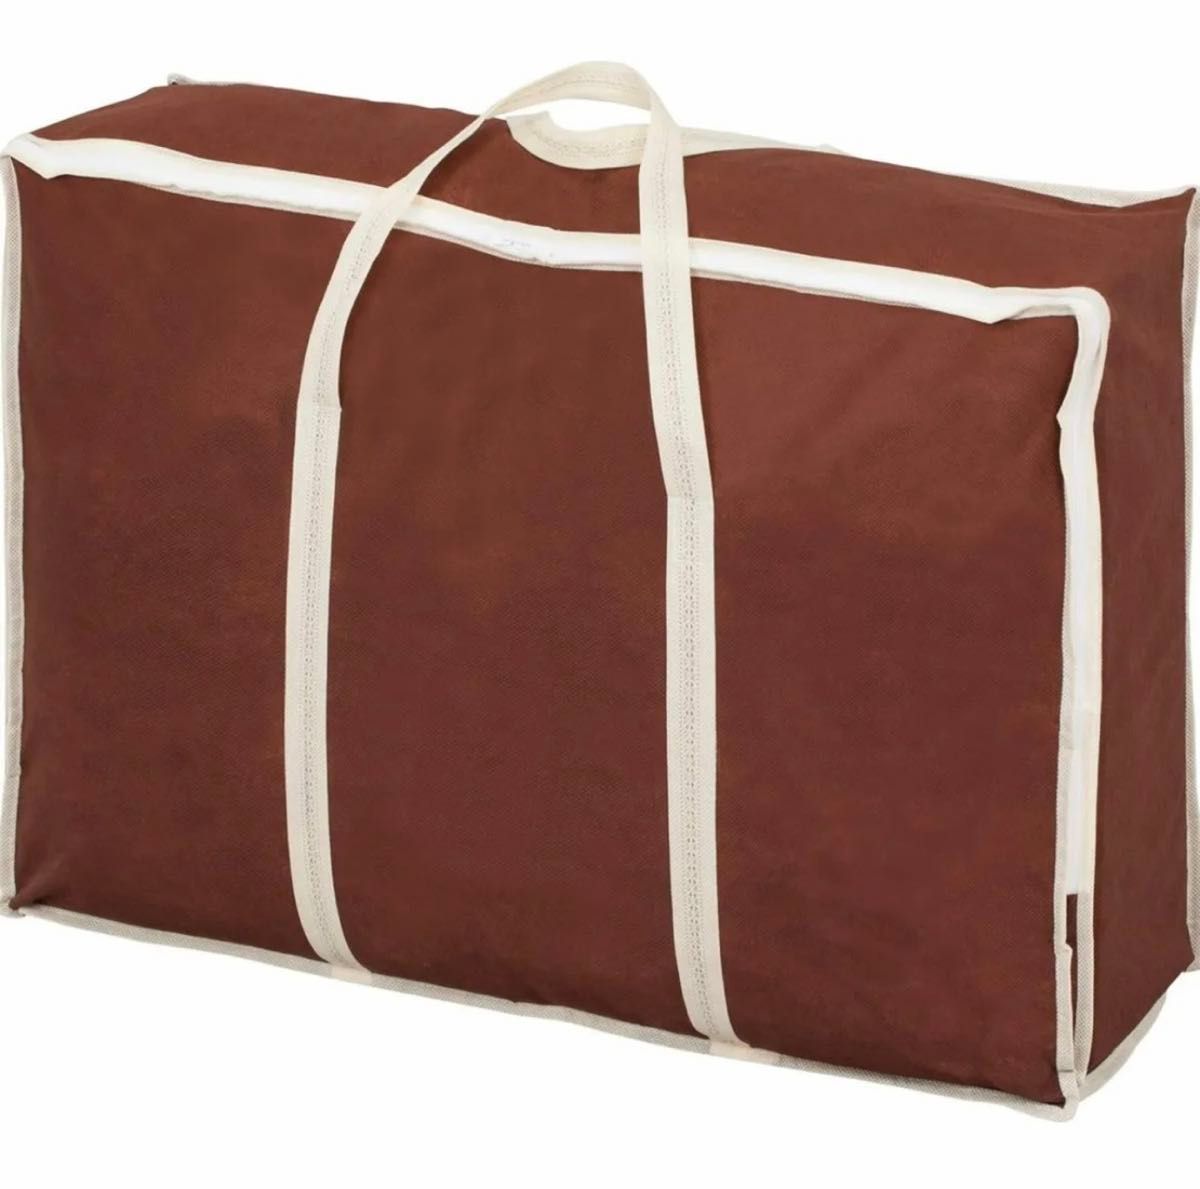 アストロ 羽毛布団収納袋 ブラウン シングルサイズ用 通気性の良い不織布製 収納バッグ 縦型 収納ケース 持ち手付き 